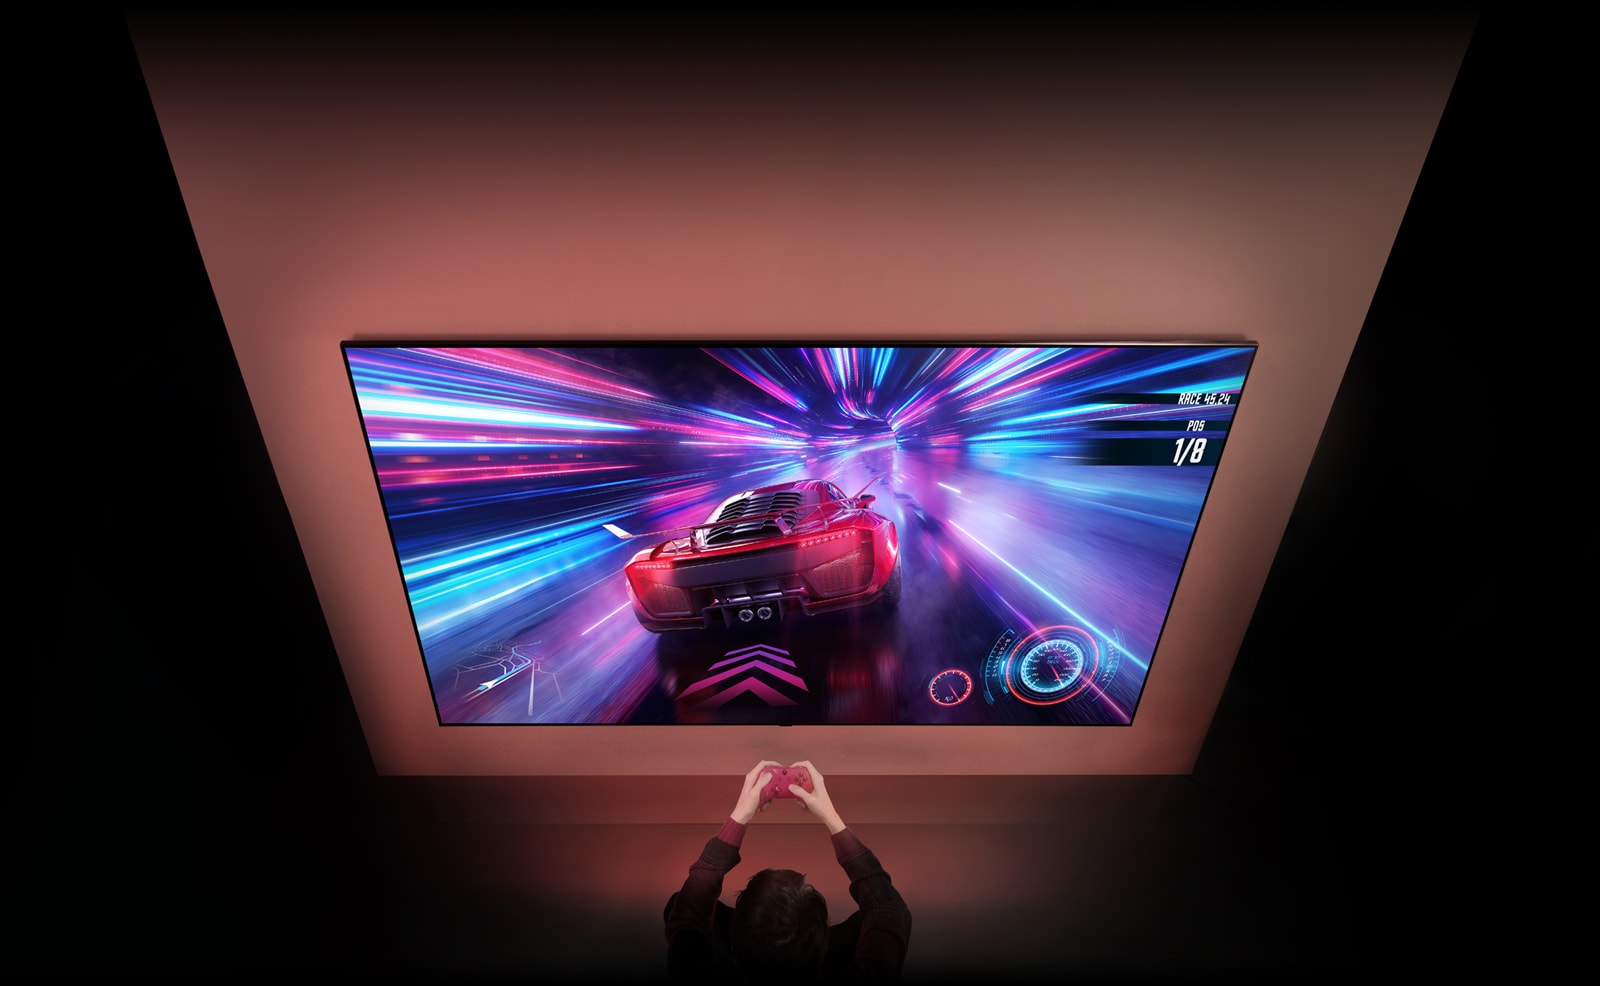 На стене установлен большой телевизор, на экране которого можно увидеть экран гоночной игры. Перед телевизором видны руки и контроллеры человека, который сосредоточен на игре.